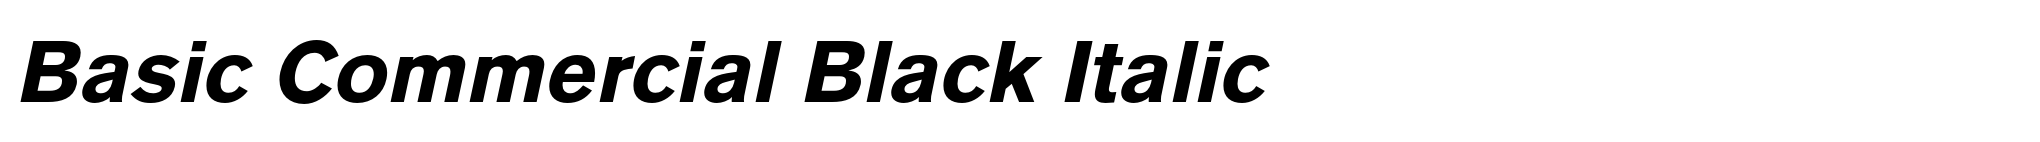 Basic Commercial Black Italic image